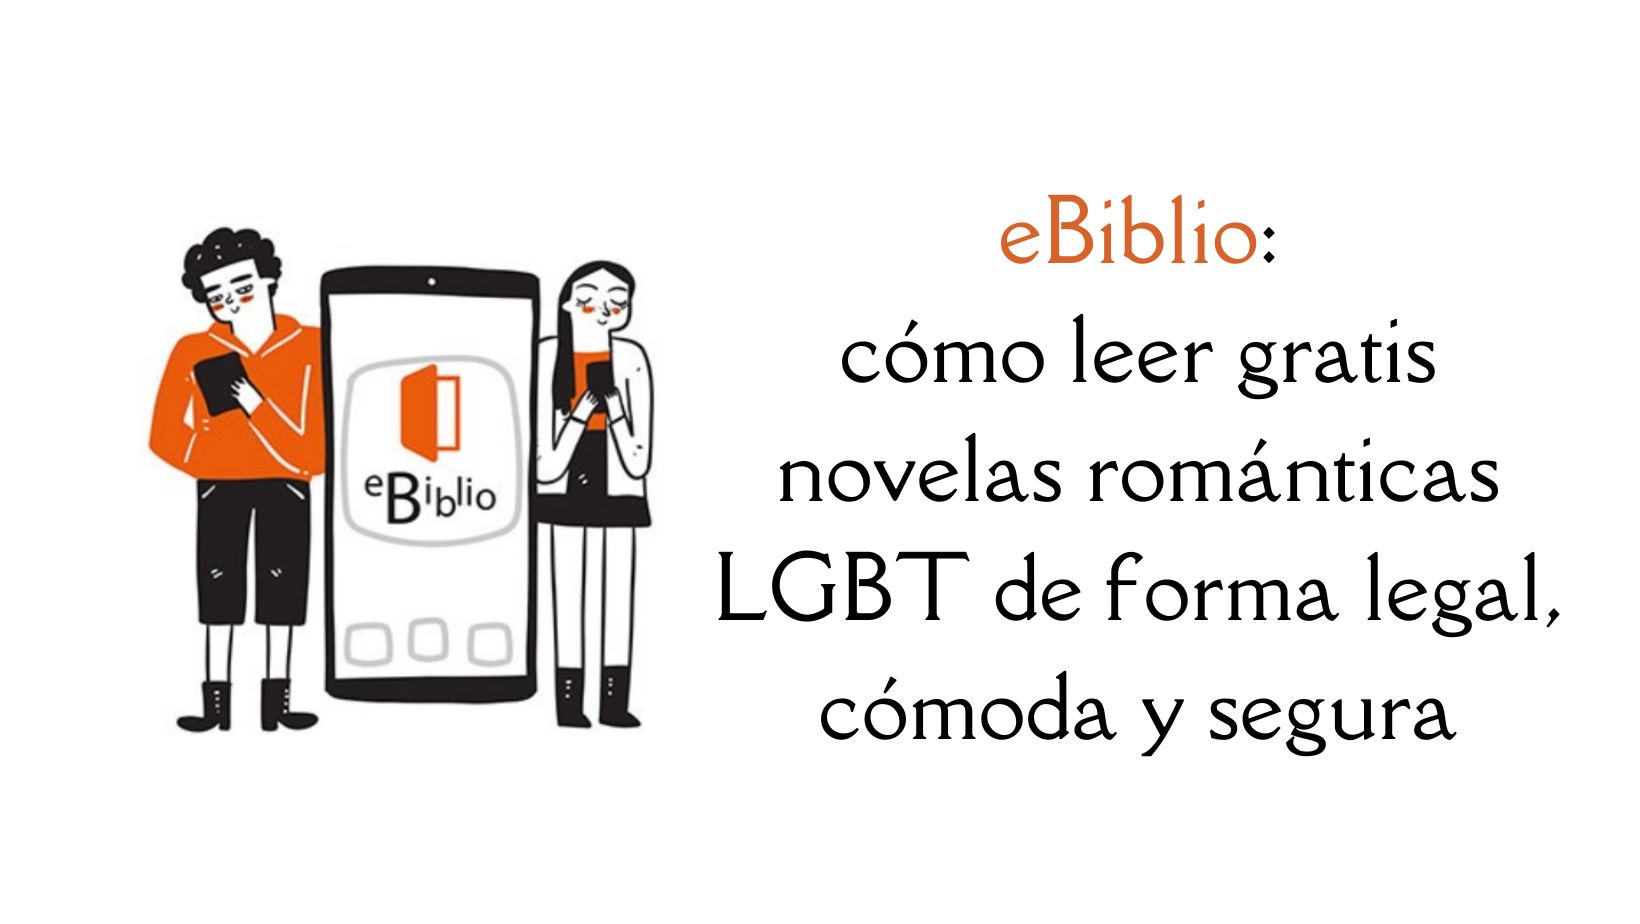 eBiblio, cómo leer gratis novelas románticas